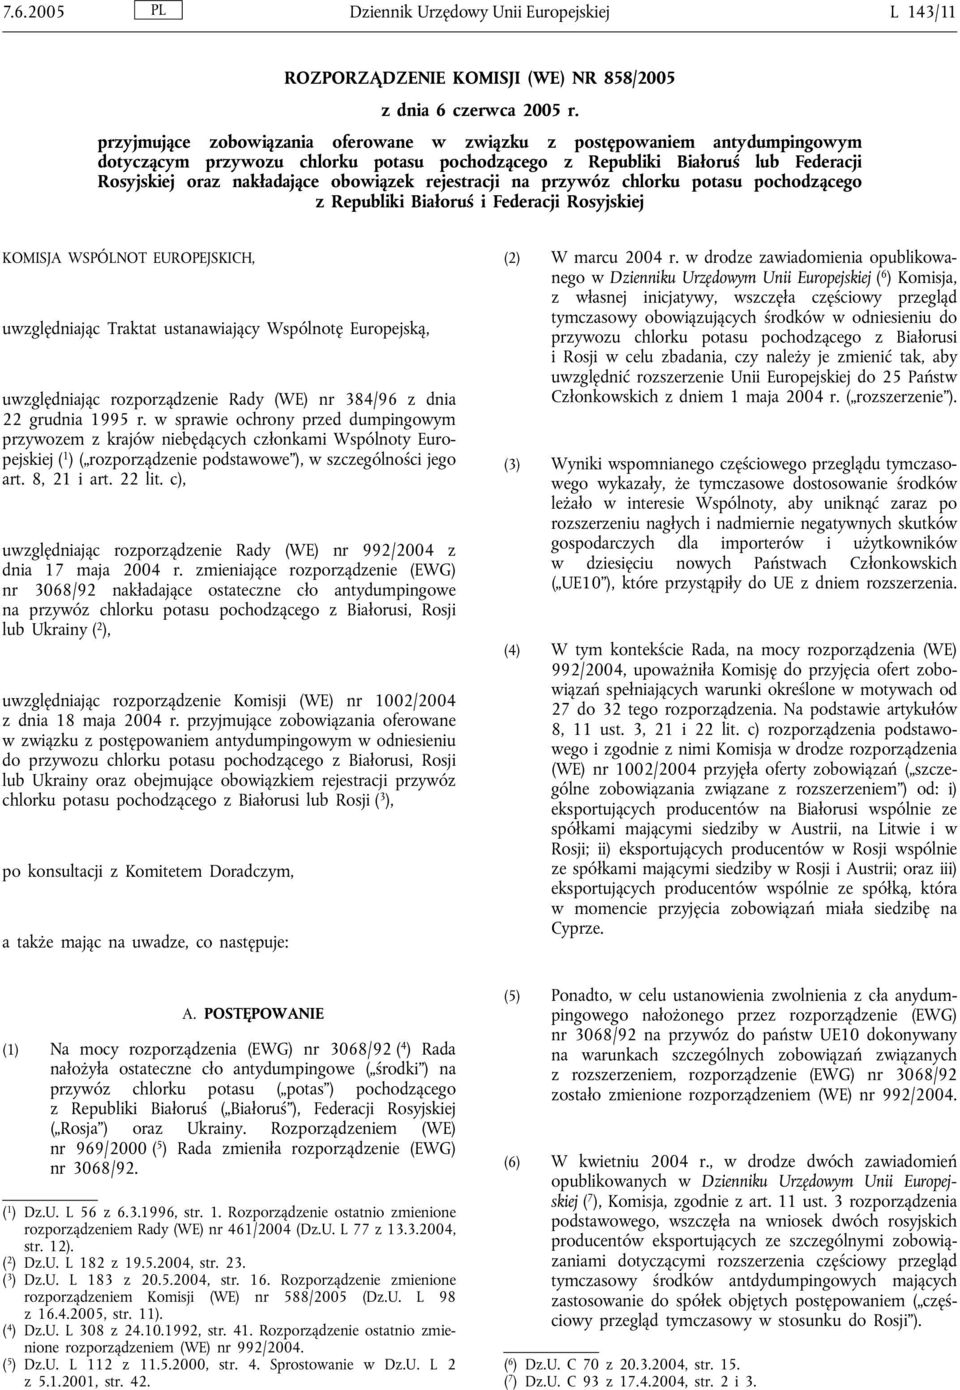 rejestracji na przywóz chlorku potasu pochodzącego z Republiki Białoruś i Federacji Rosyjskiej KOMISJA WSPÓLNOT EUROPEJSKICH, uwzględniając Traktat ustanawiający Wspólnotę Europejską, uwzględniając